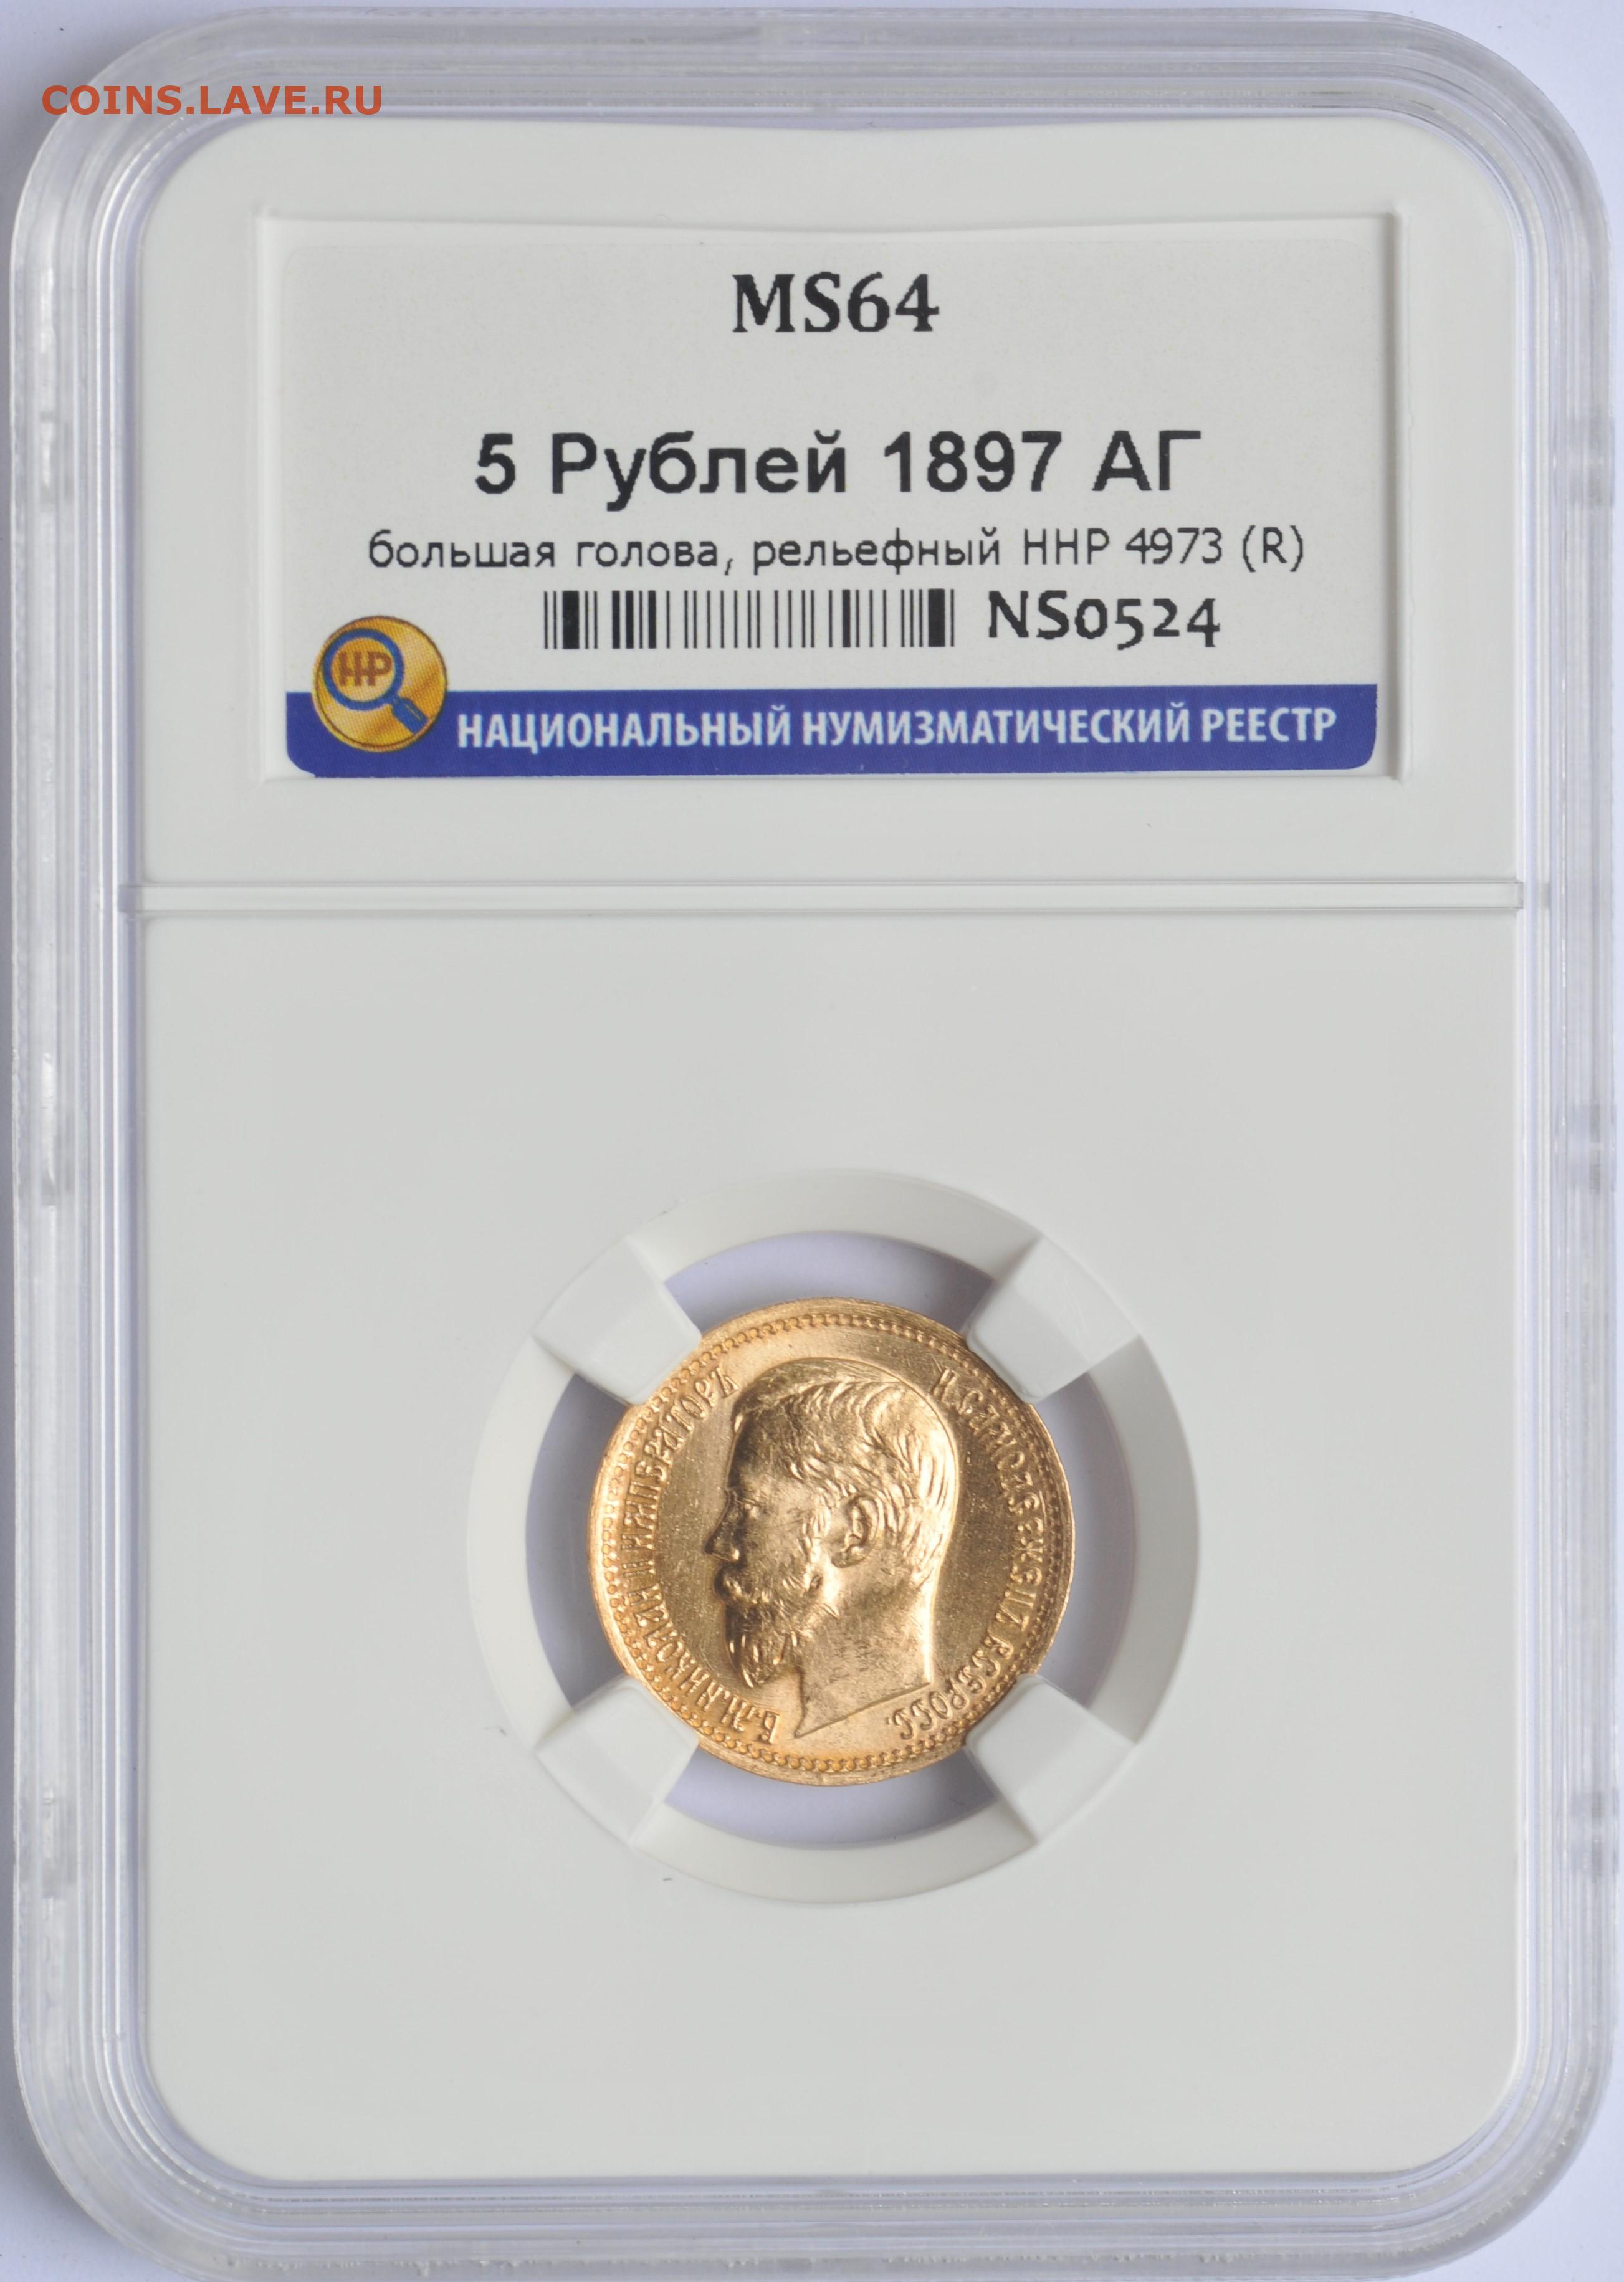 1 грамм золота 900 пробы. 10 Рублей 1911 ms65. Монета в слабе. 10 Рублей золото штемпельный.